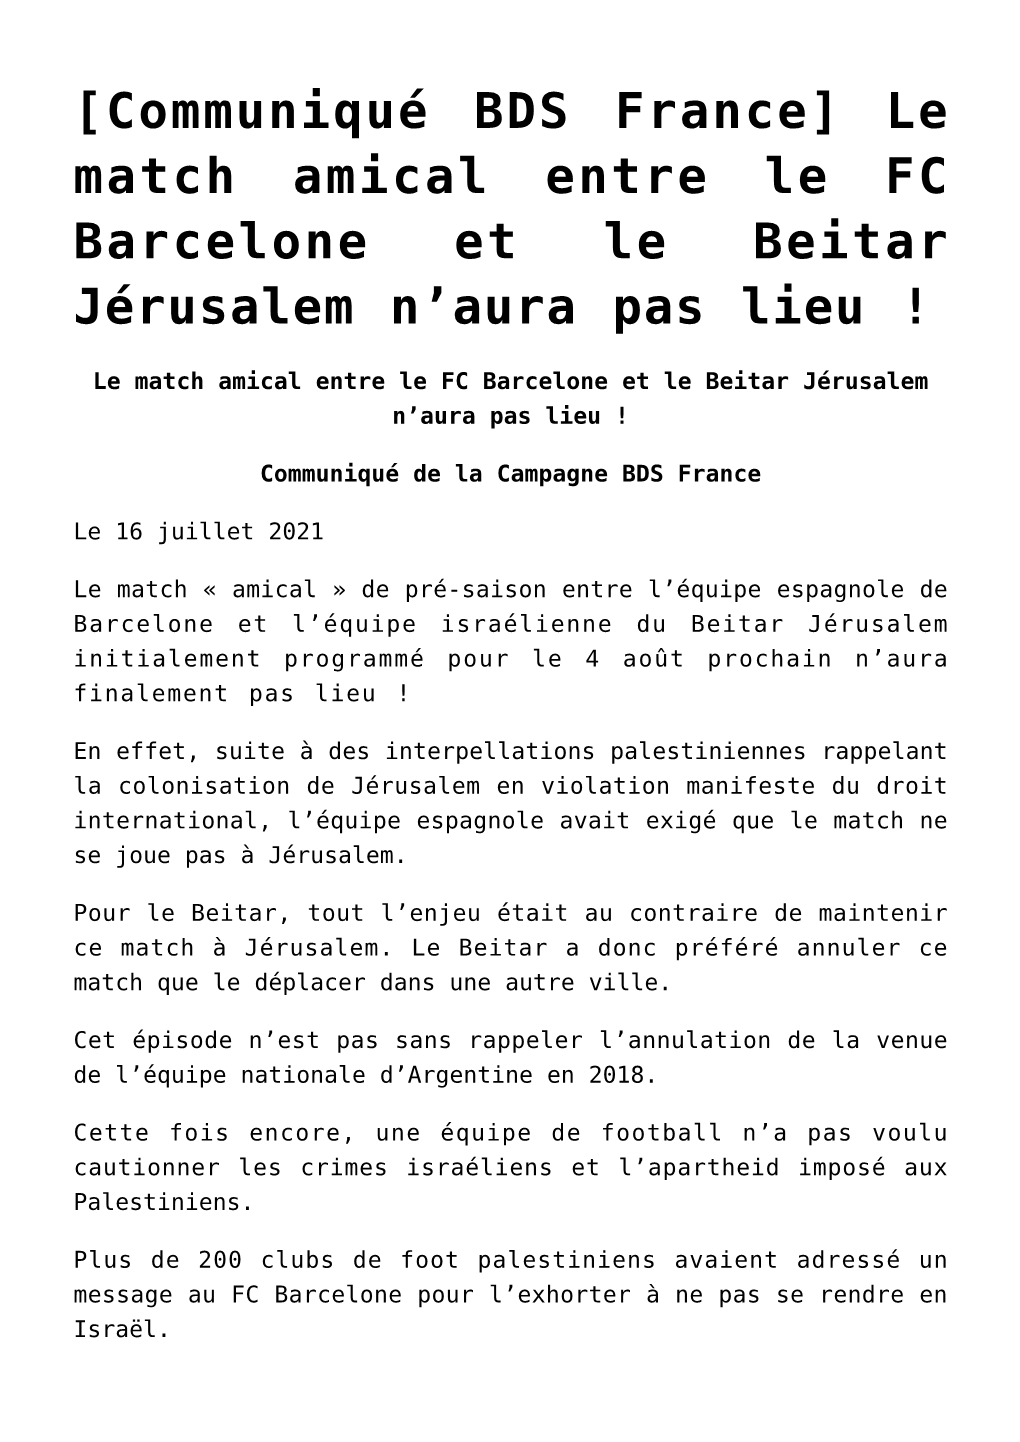 Le Match Amical Entre Le FC Barcelone Et Le Beitar Jérusalem N’Aura Pas Lieu !